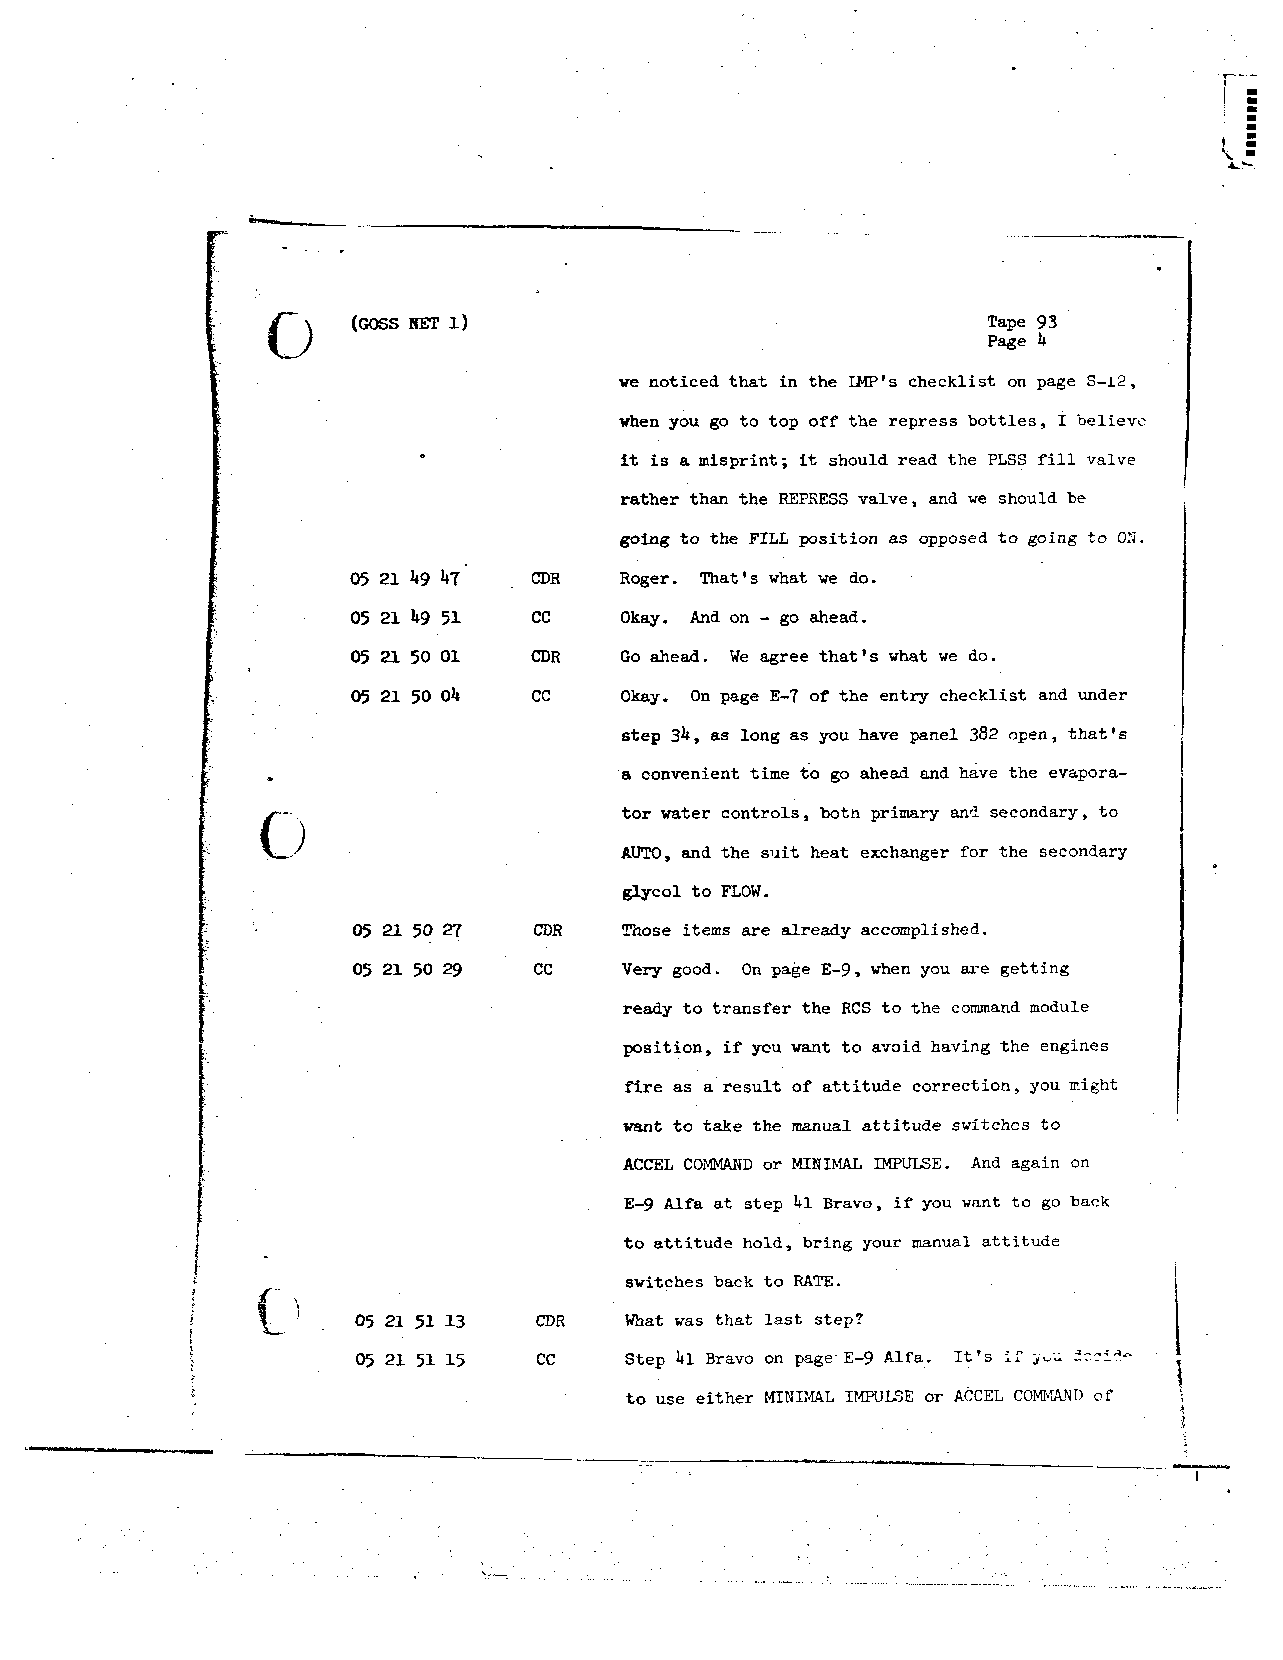 Page 736 of Apollo 8’s original transcript